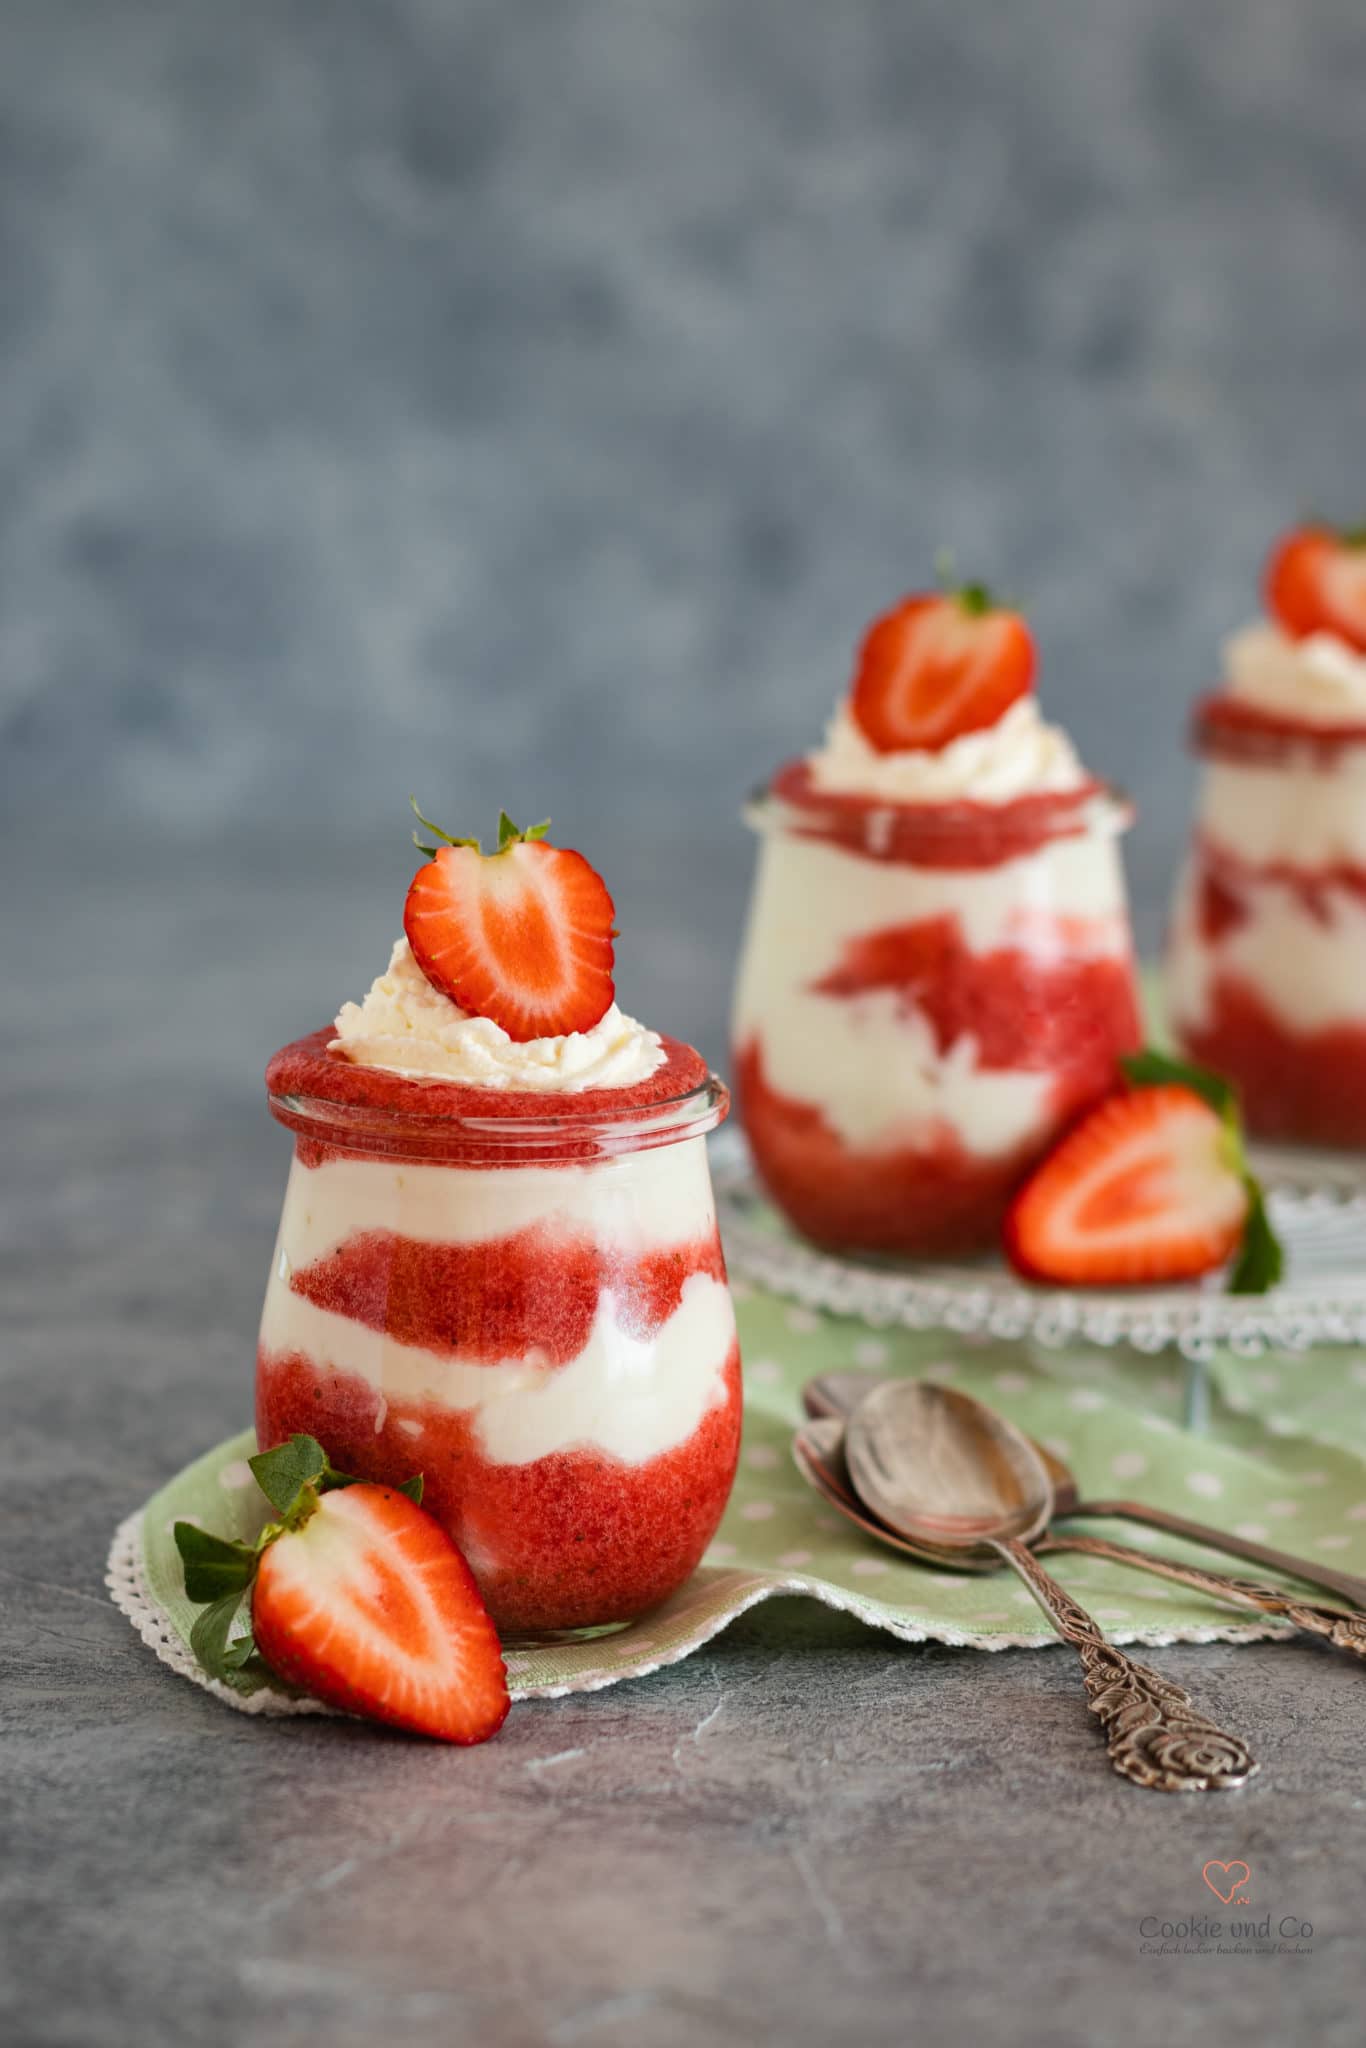 Schneller Erdbeer-Traum (Dessert im Glas)